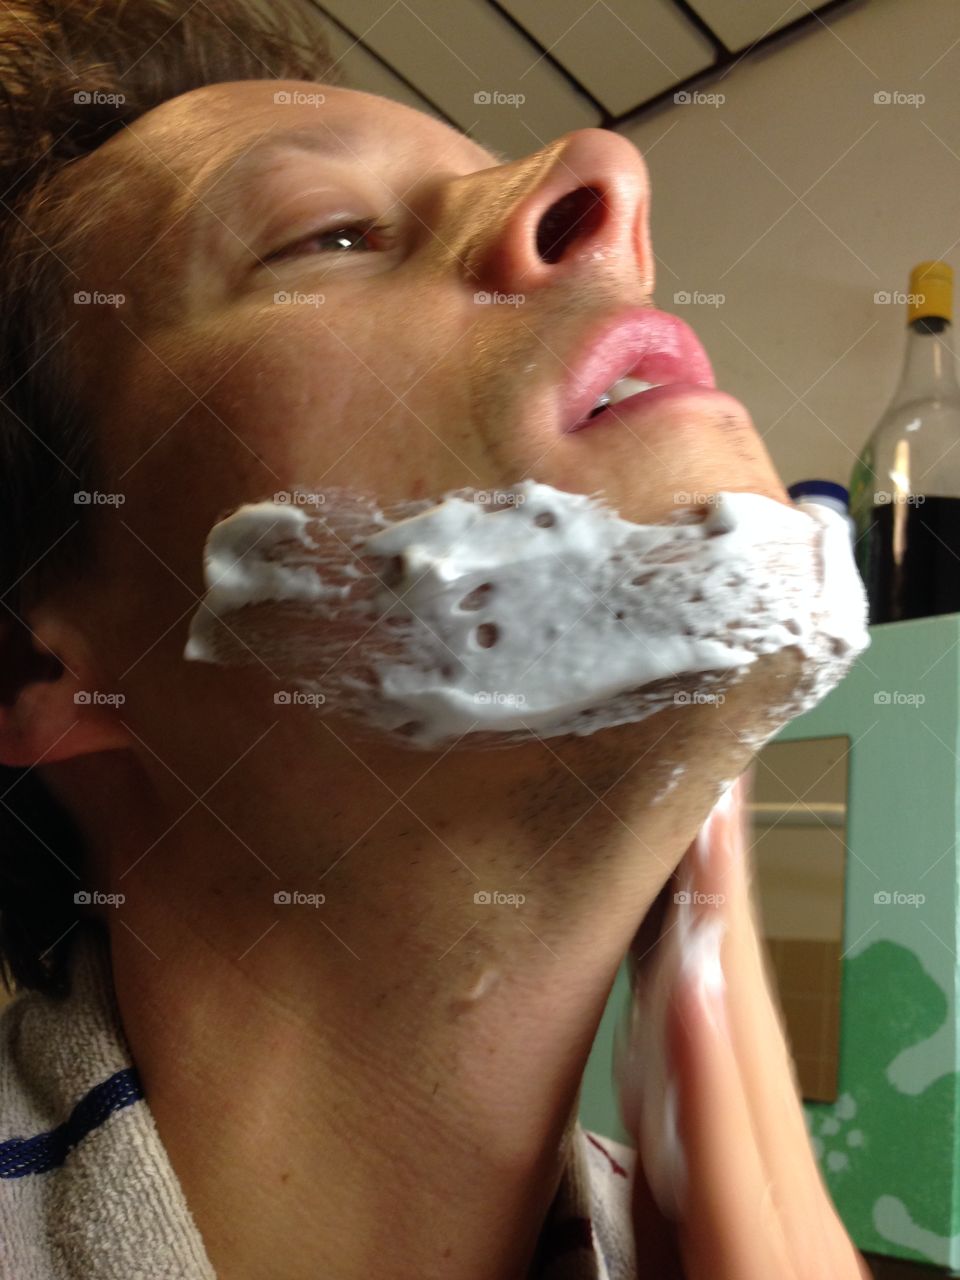 Man applying shaving foam on his face to prepare for shaving.